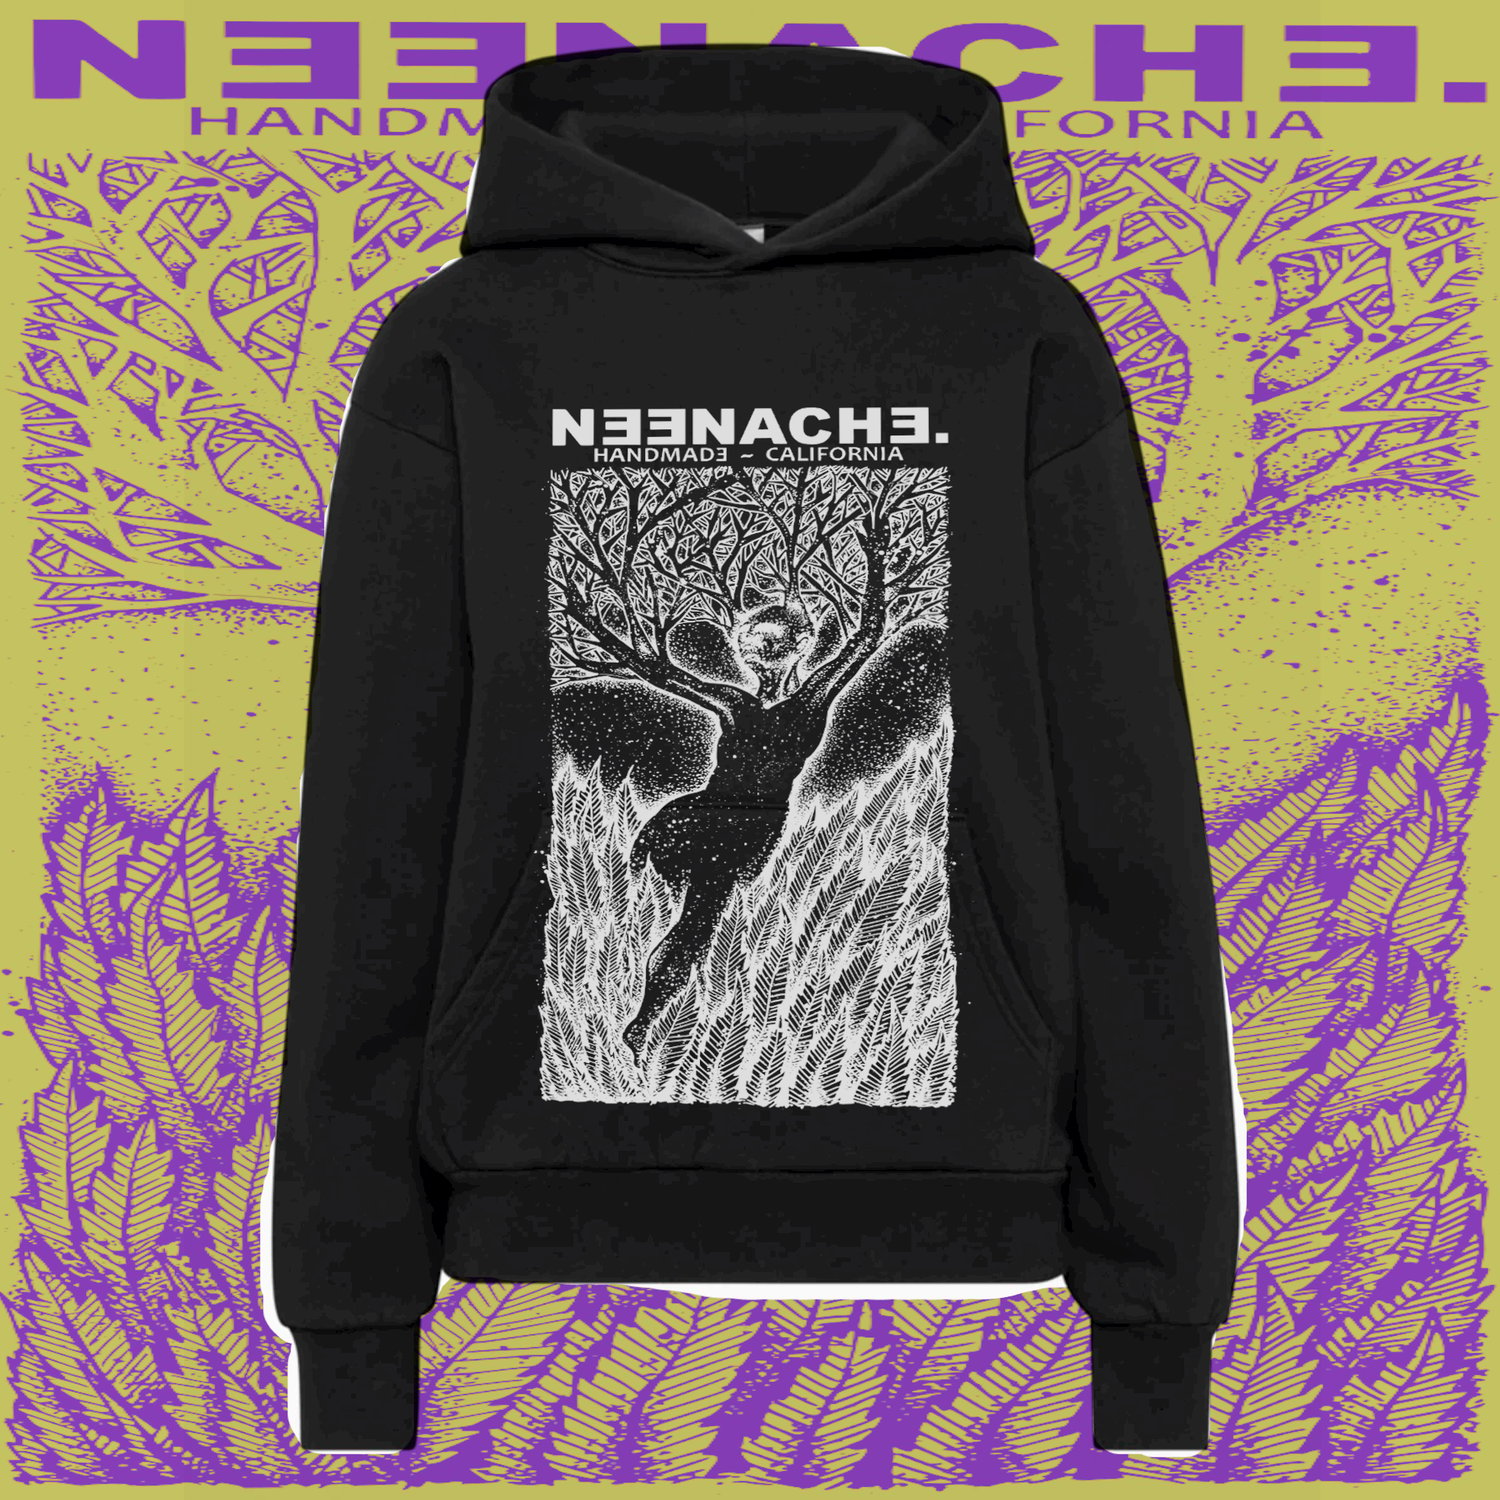 Return to Nature S1 - Sweatshirt